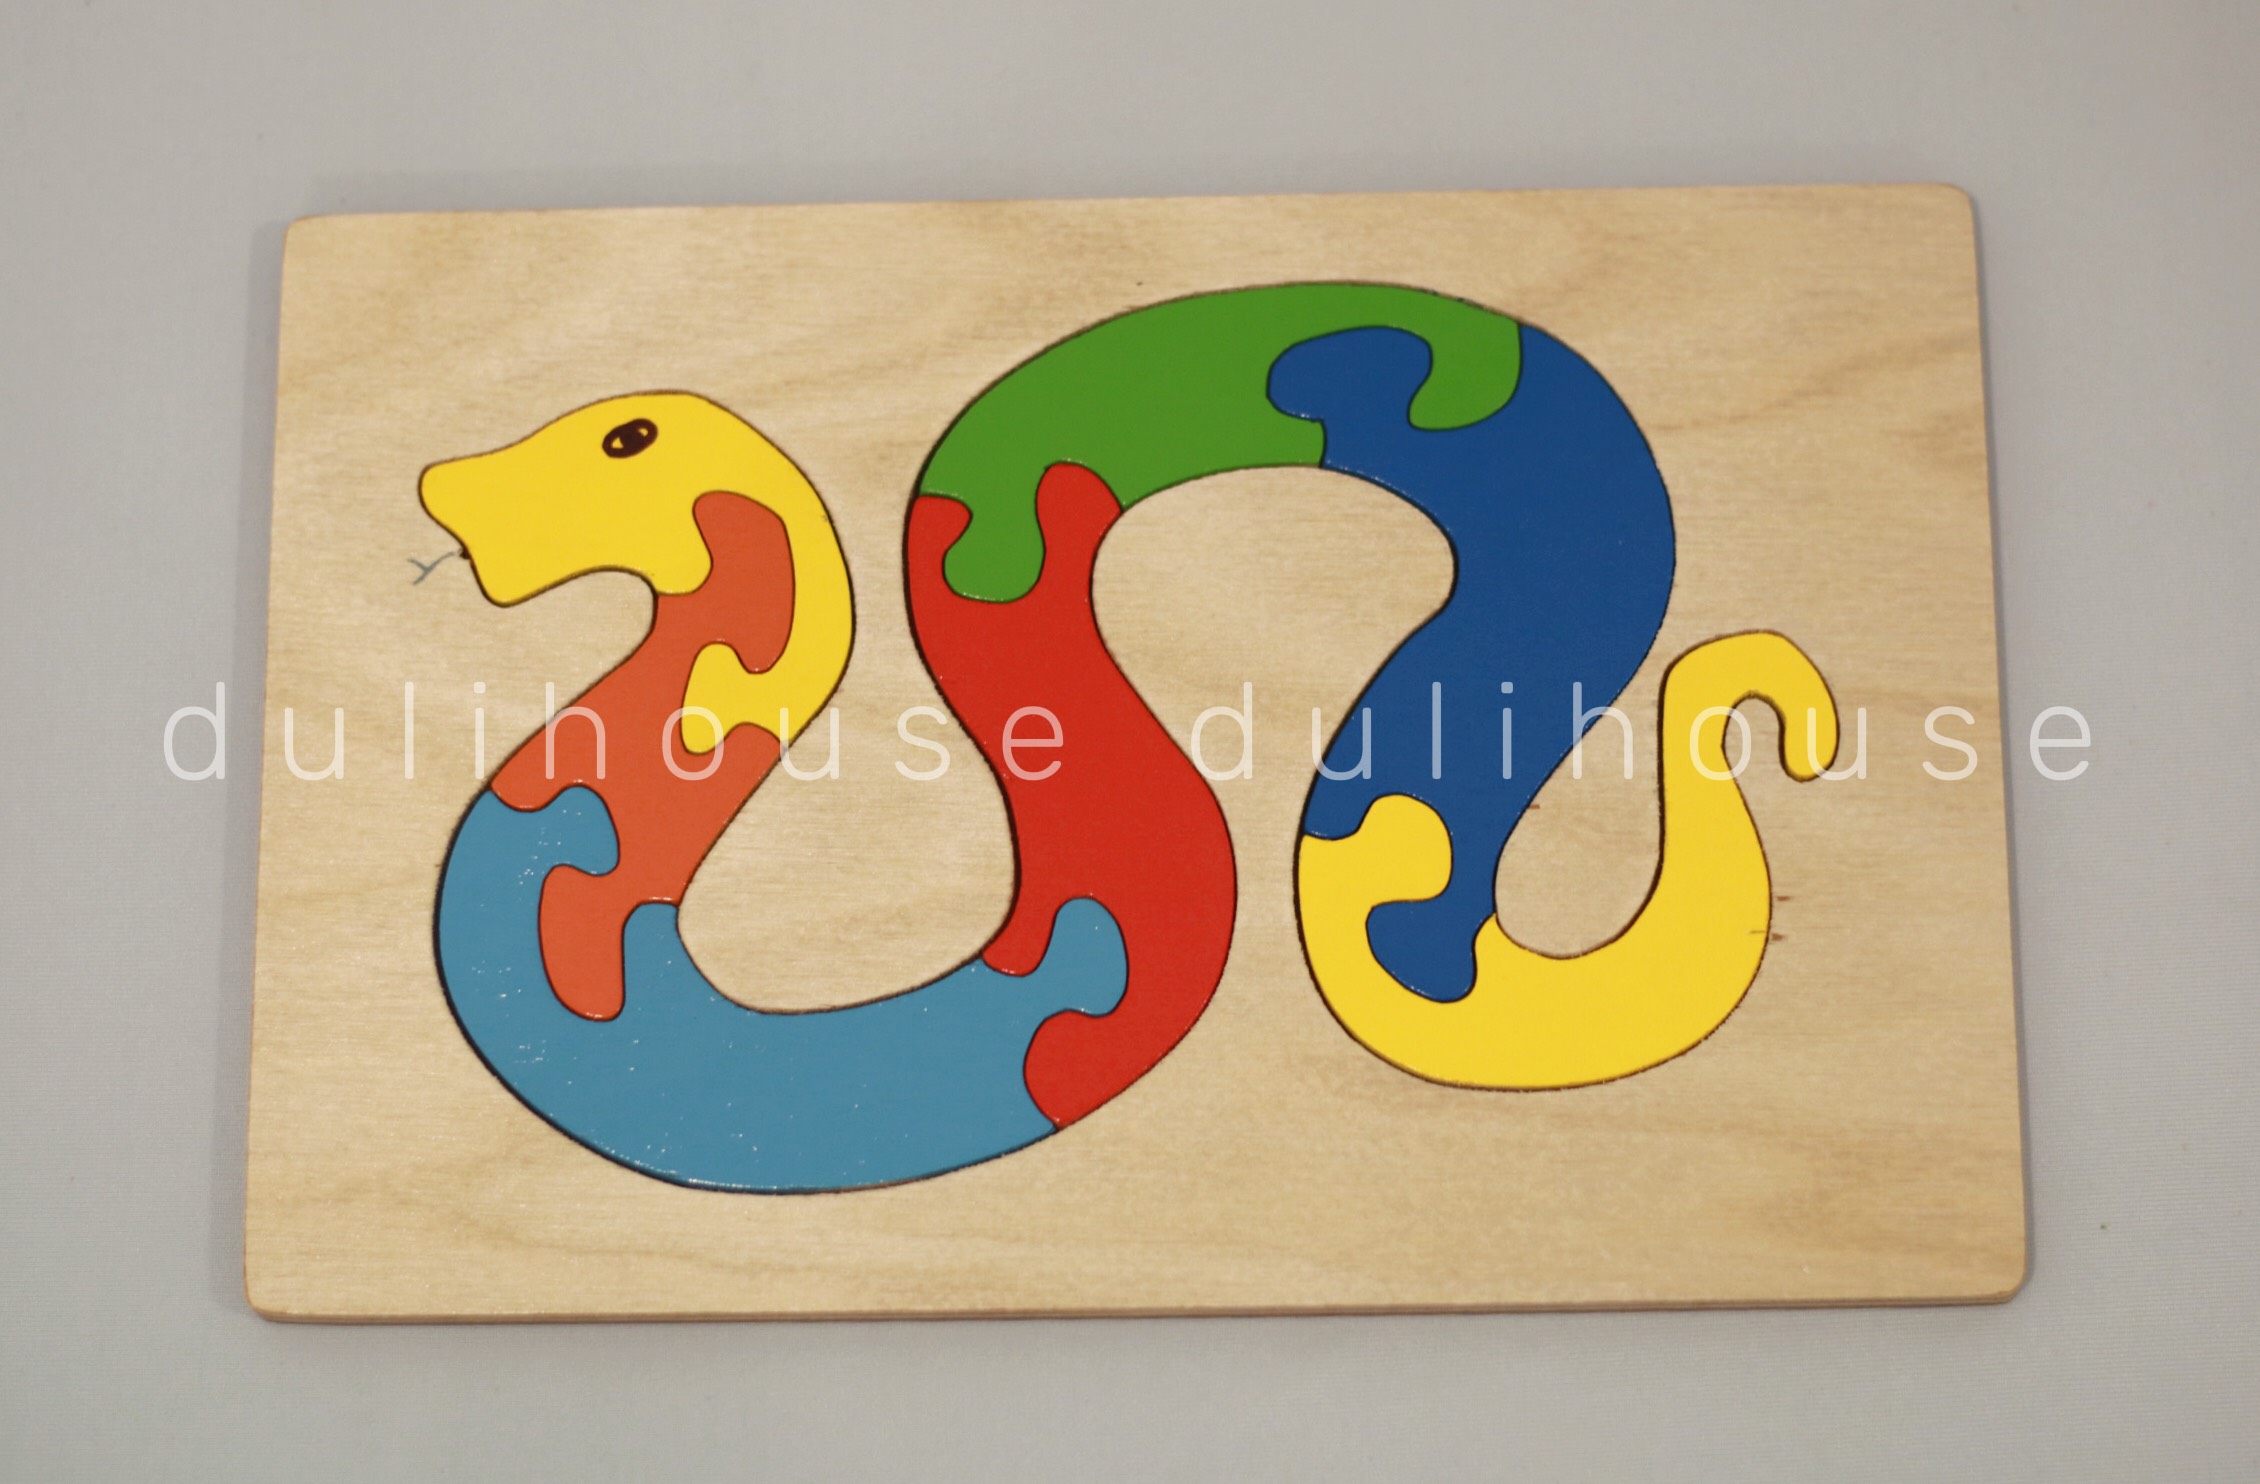 Đồ chơi Gỗ Tranh ghép hình con rắn - Hỗ trợ bé nhận biết màu sắc, phát triển tư duy logic, khám phá thế giới động vật, sản xuất tại Việt Nam